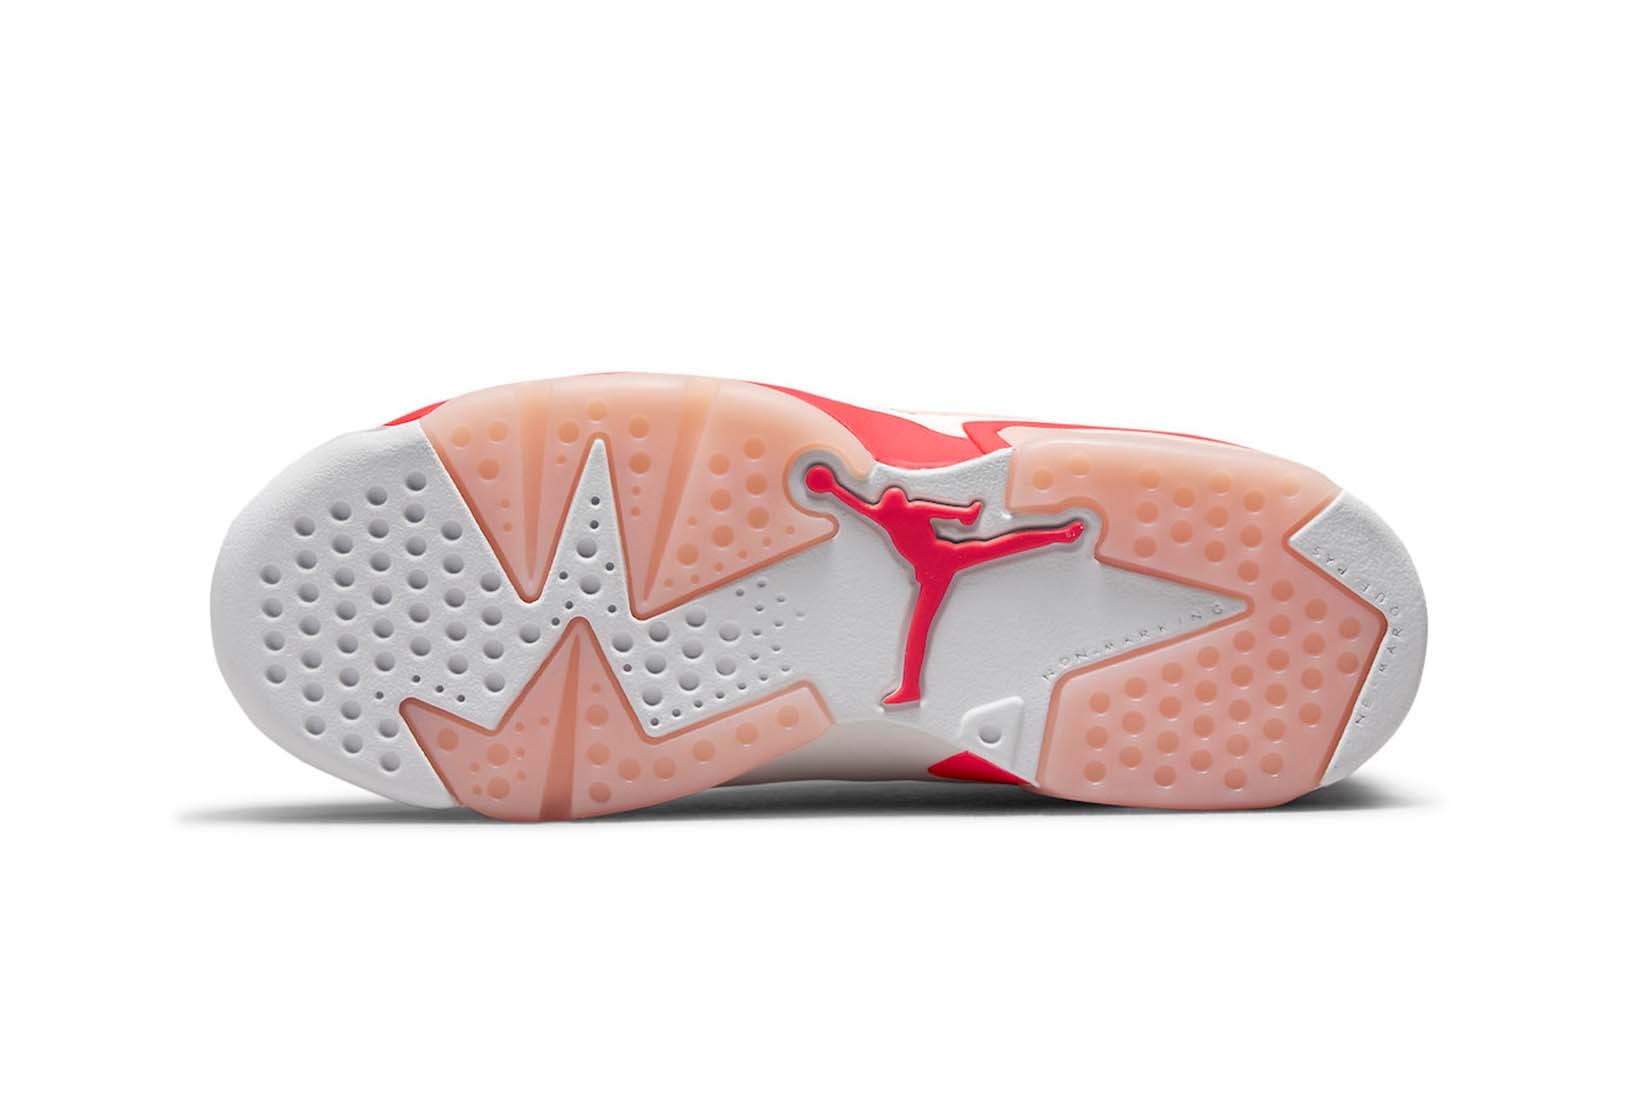 Air Jordan 6 GS Hyper Pink 3M Release Date - Sneaker Bar Detroit